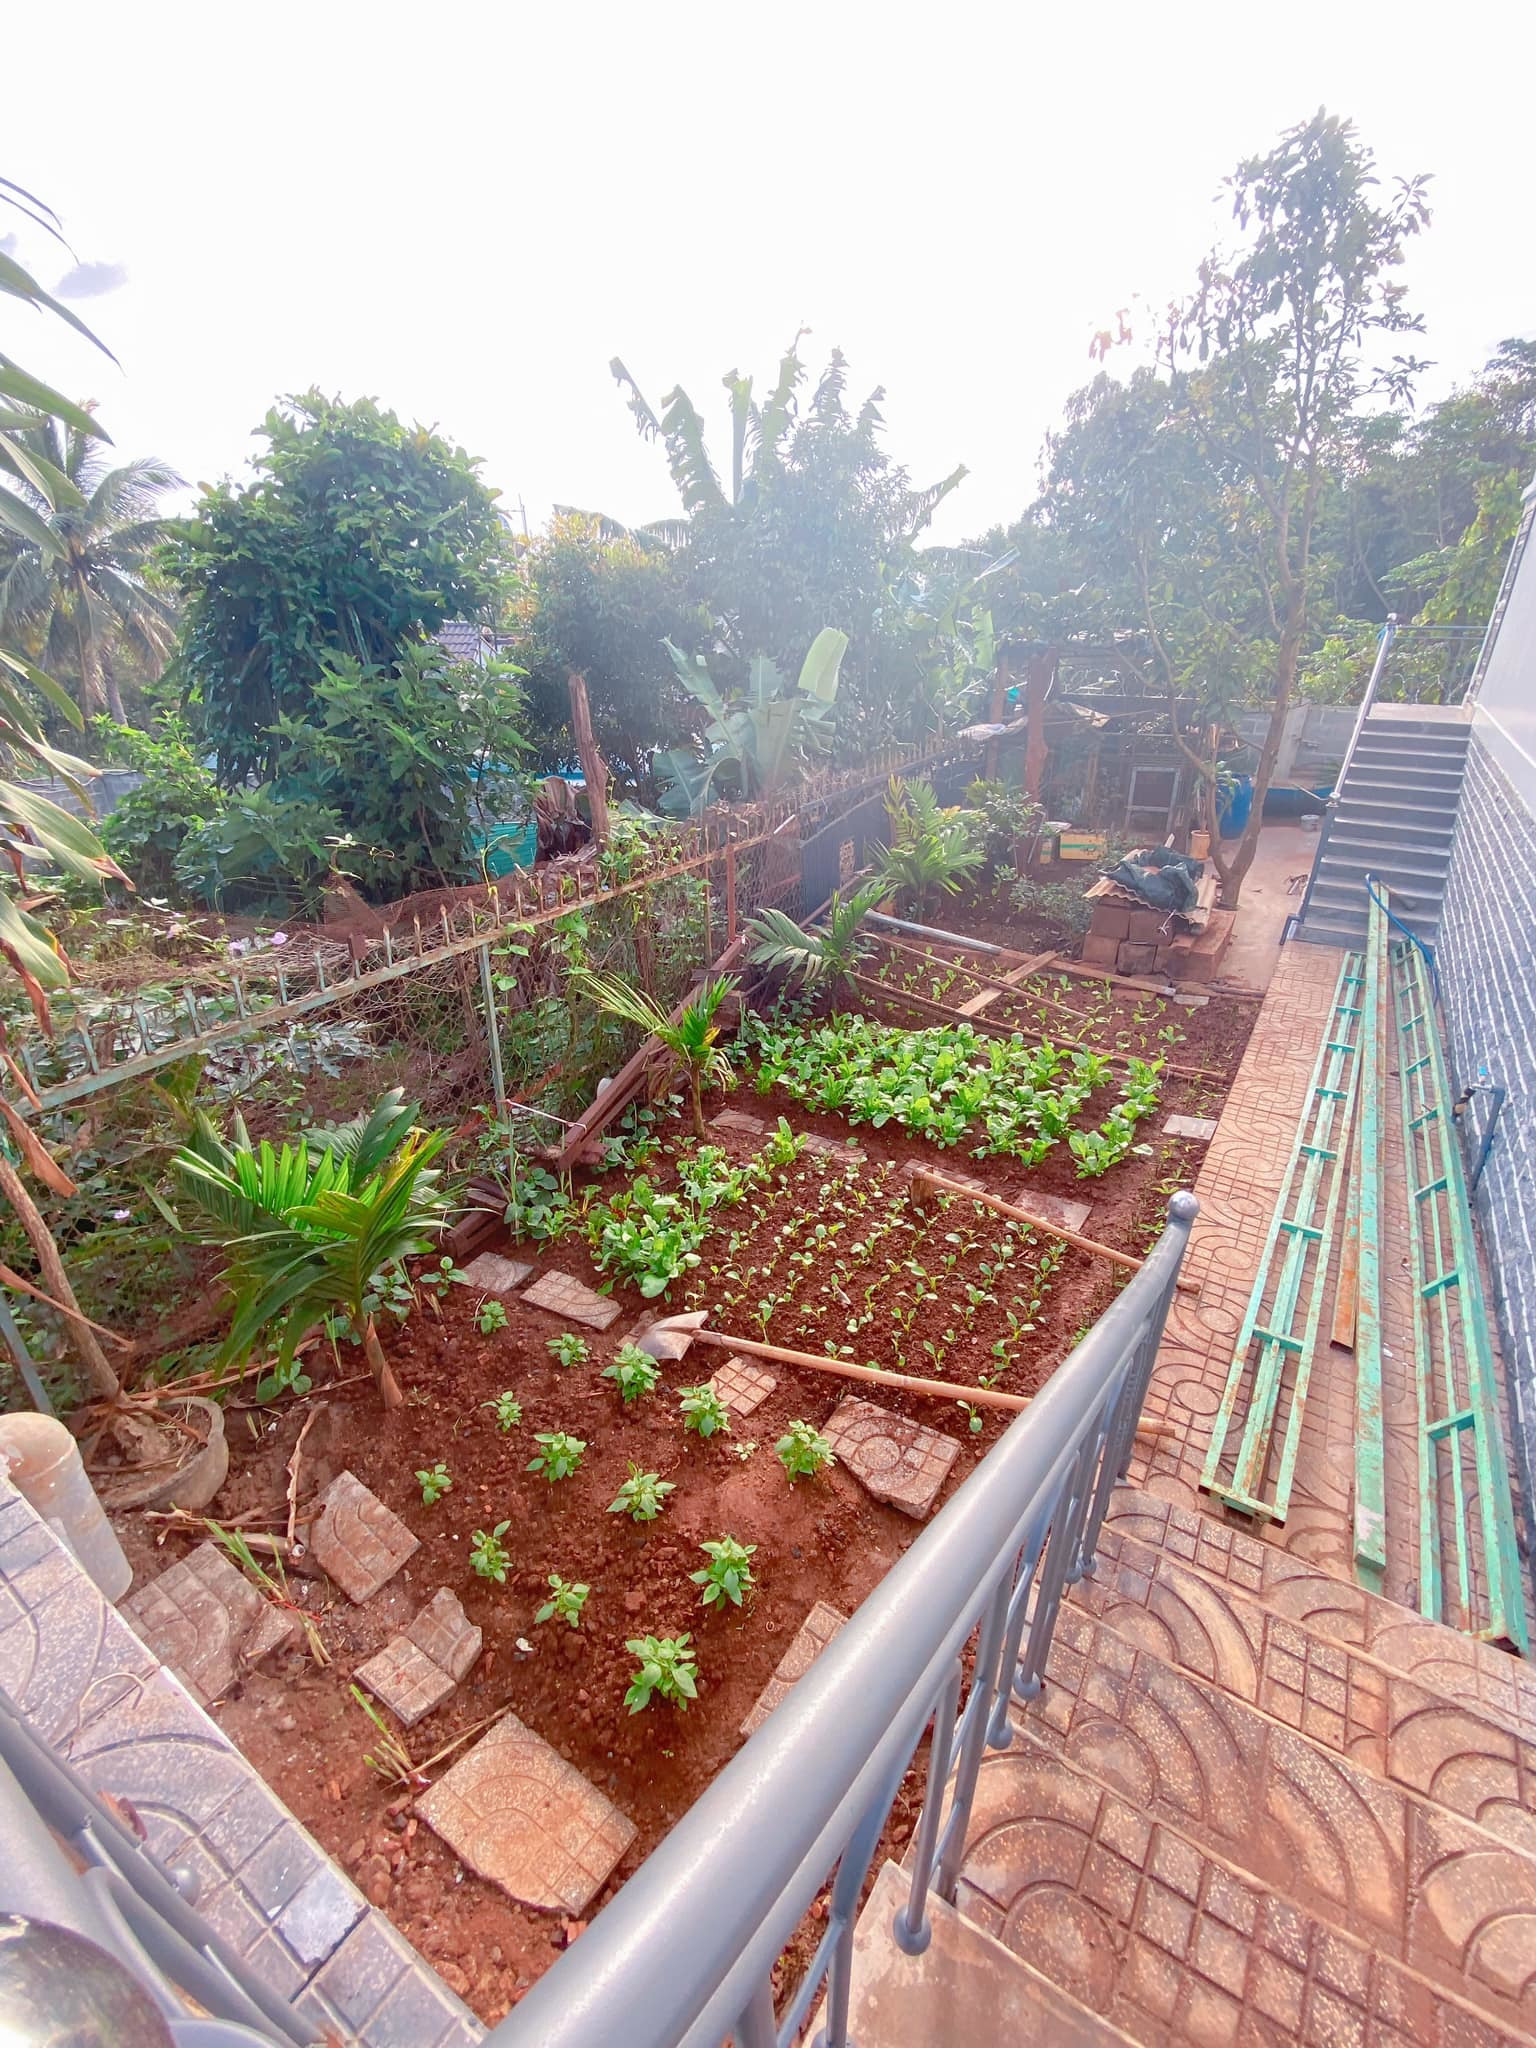 Nhà mái Thái rộng 170m2 ở Gia Lai có vườn rau nhỏ xinh mướt mắt